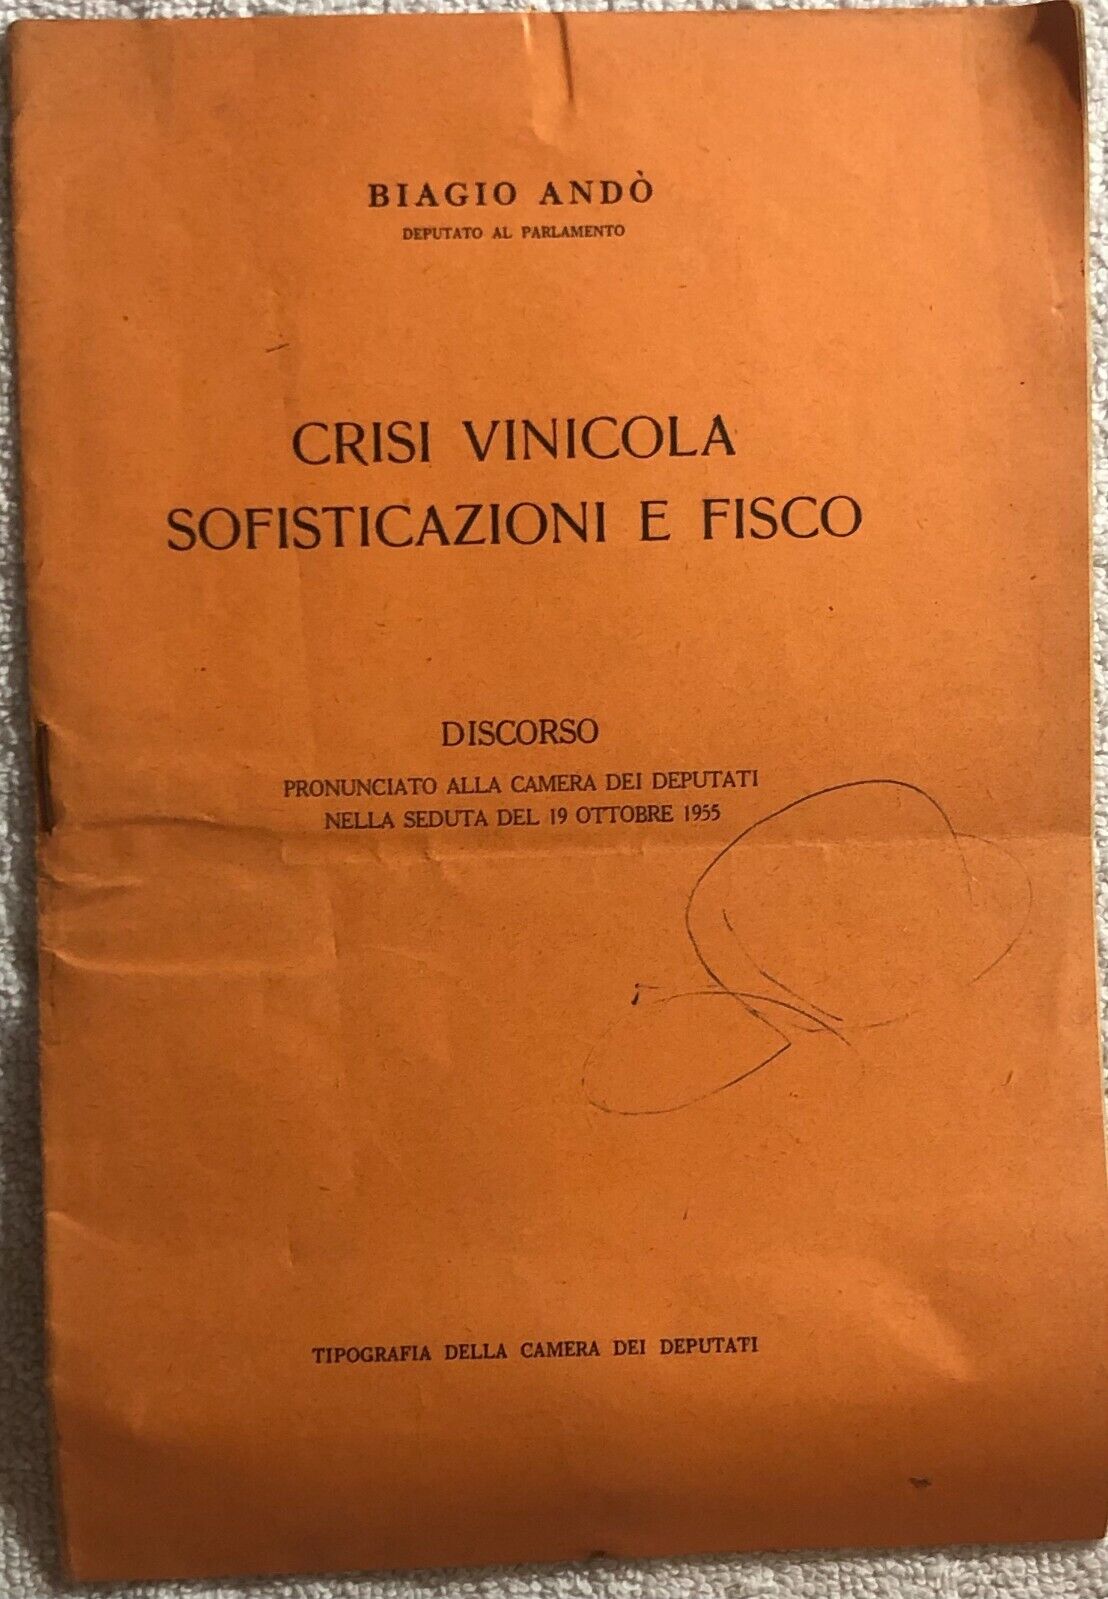 Crisi vinicola sofisticazioni e fisco di Biagio And?,  1955,  Camera Dei Deputat